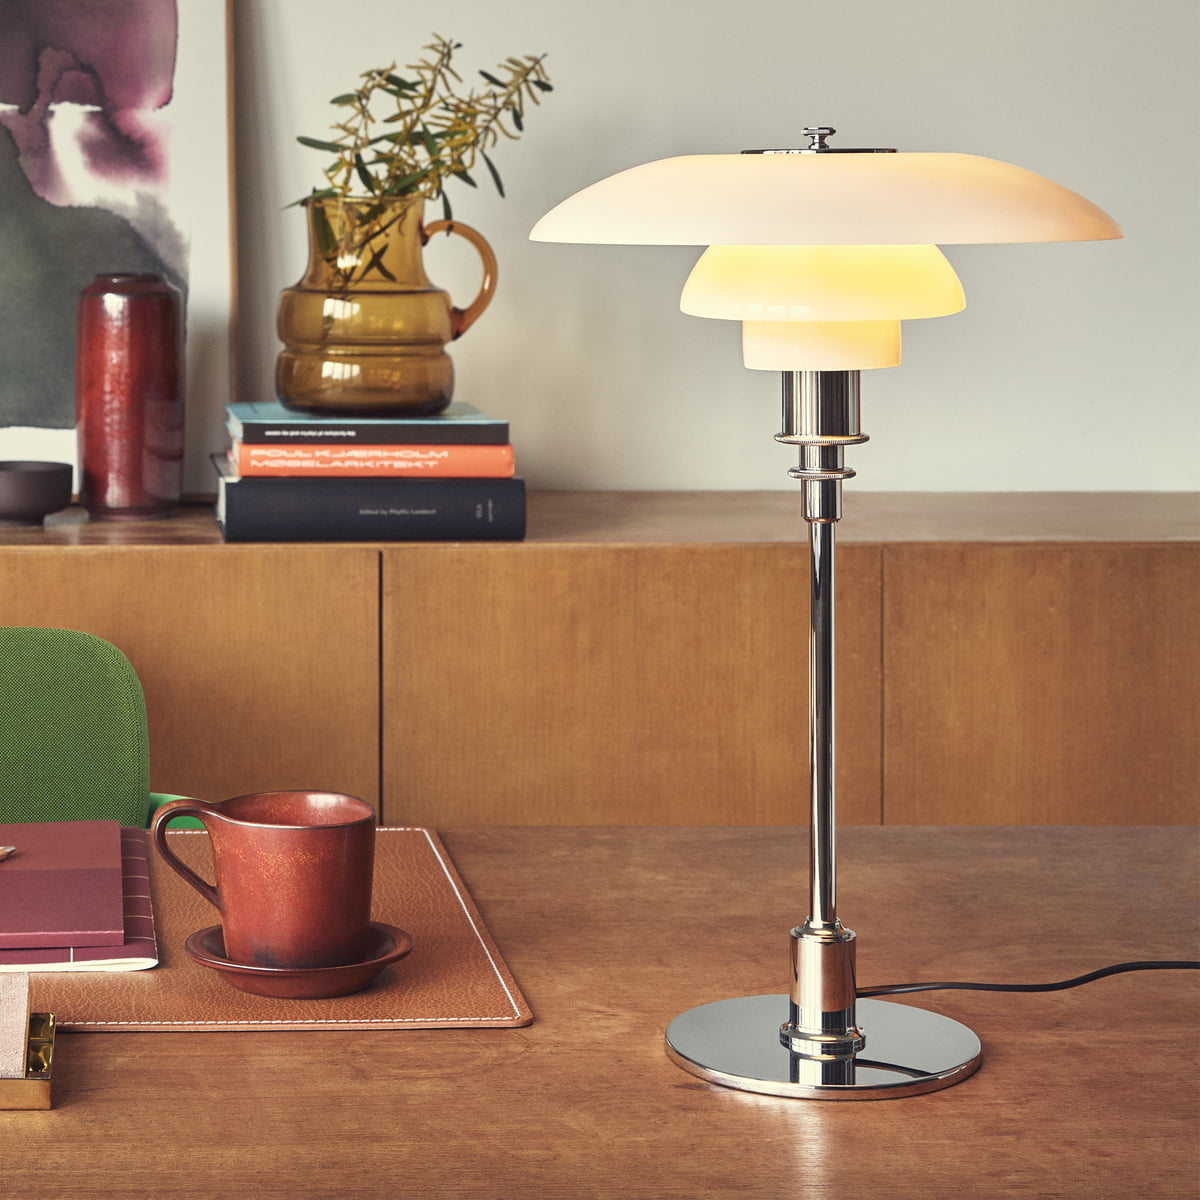 PH 4/3 Table Lamp by Louis Poulsen, 5744904522